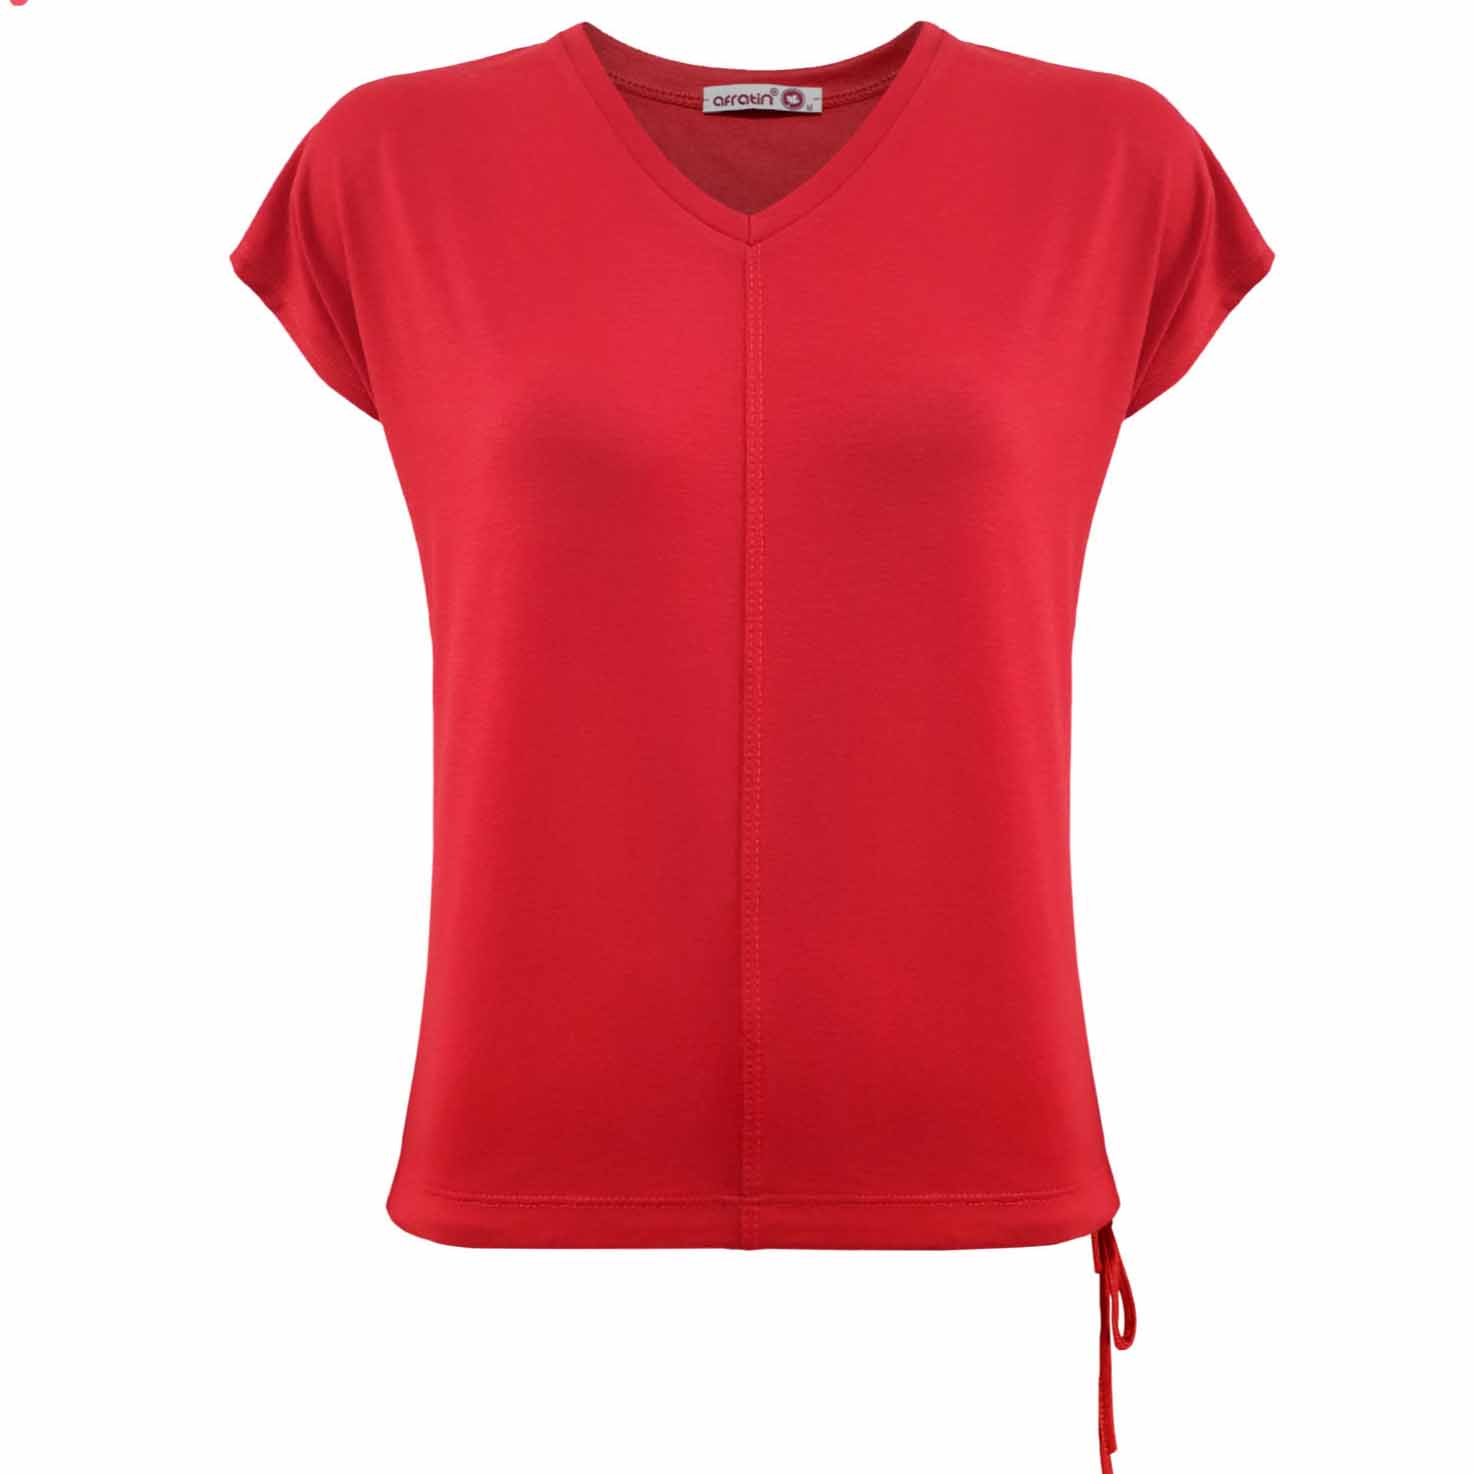 تی شرت زنانه افراتین کد 2544 رنگ قرمز-برای اینکه طراح لباس شویم چه چیز هایی لازم است؟  طراحی لباس شکلی از هنر است که به ساخت لباس و دیگر اکسسوری های مورد نیاز افراد اختصاص دارد. این هنر شامل فرآیندی بسیار دقیق از انتخاب یک طرح تا مراحل پایانی دوخت و ارائه لباس است.این حرفه به دو بخش اصلی تقسیم می شو ...